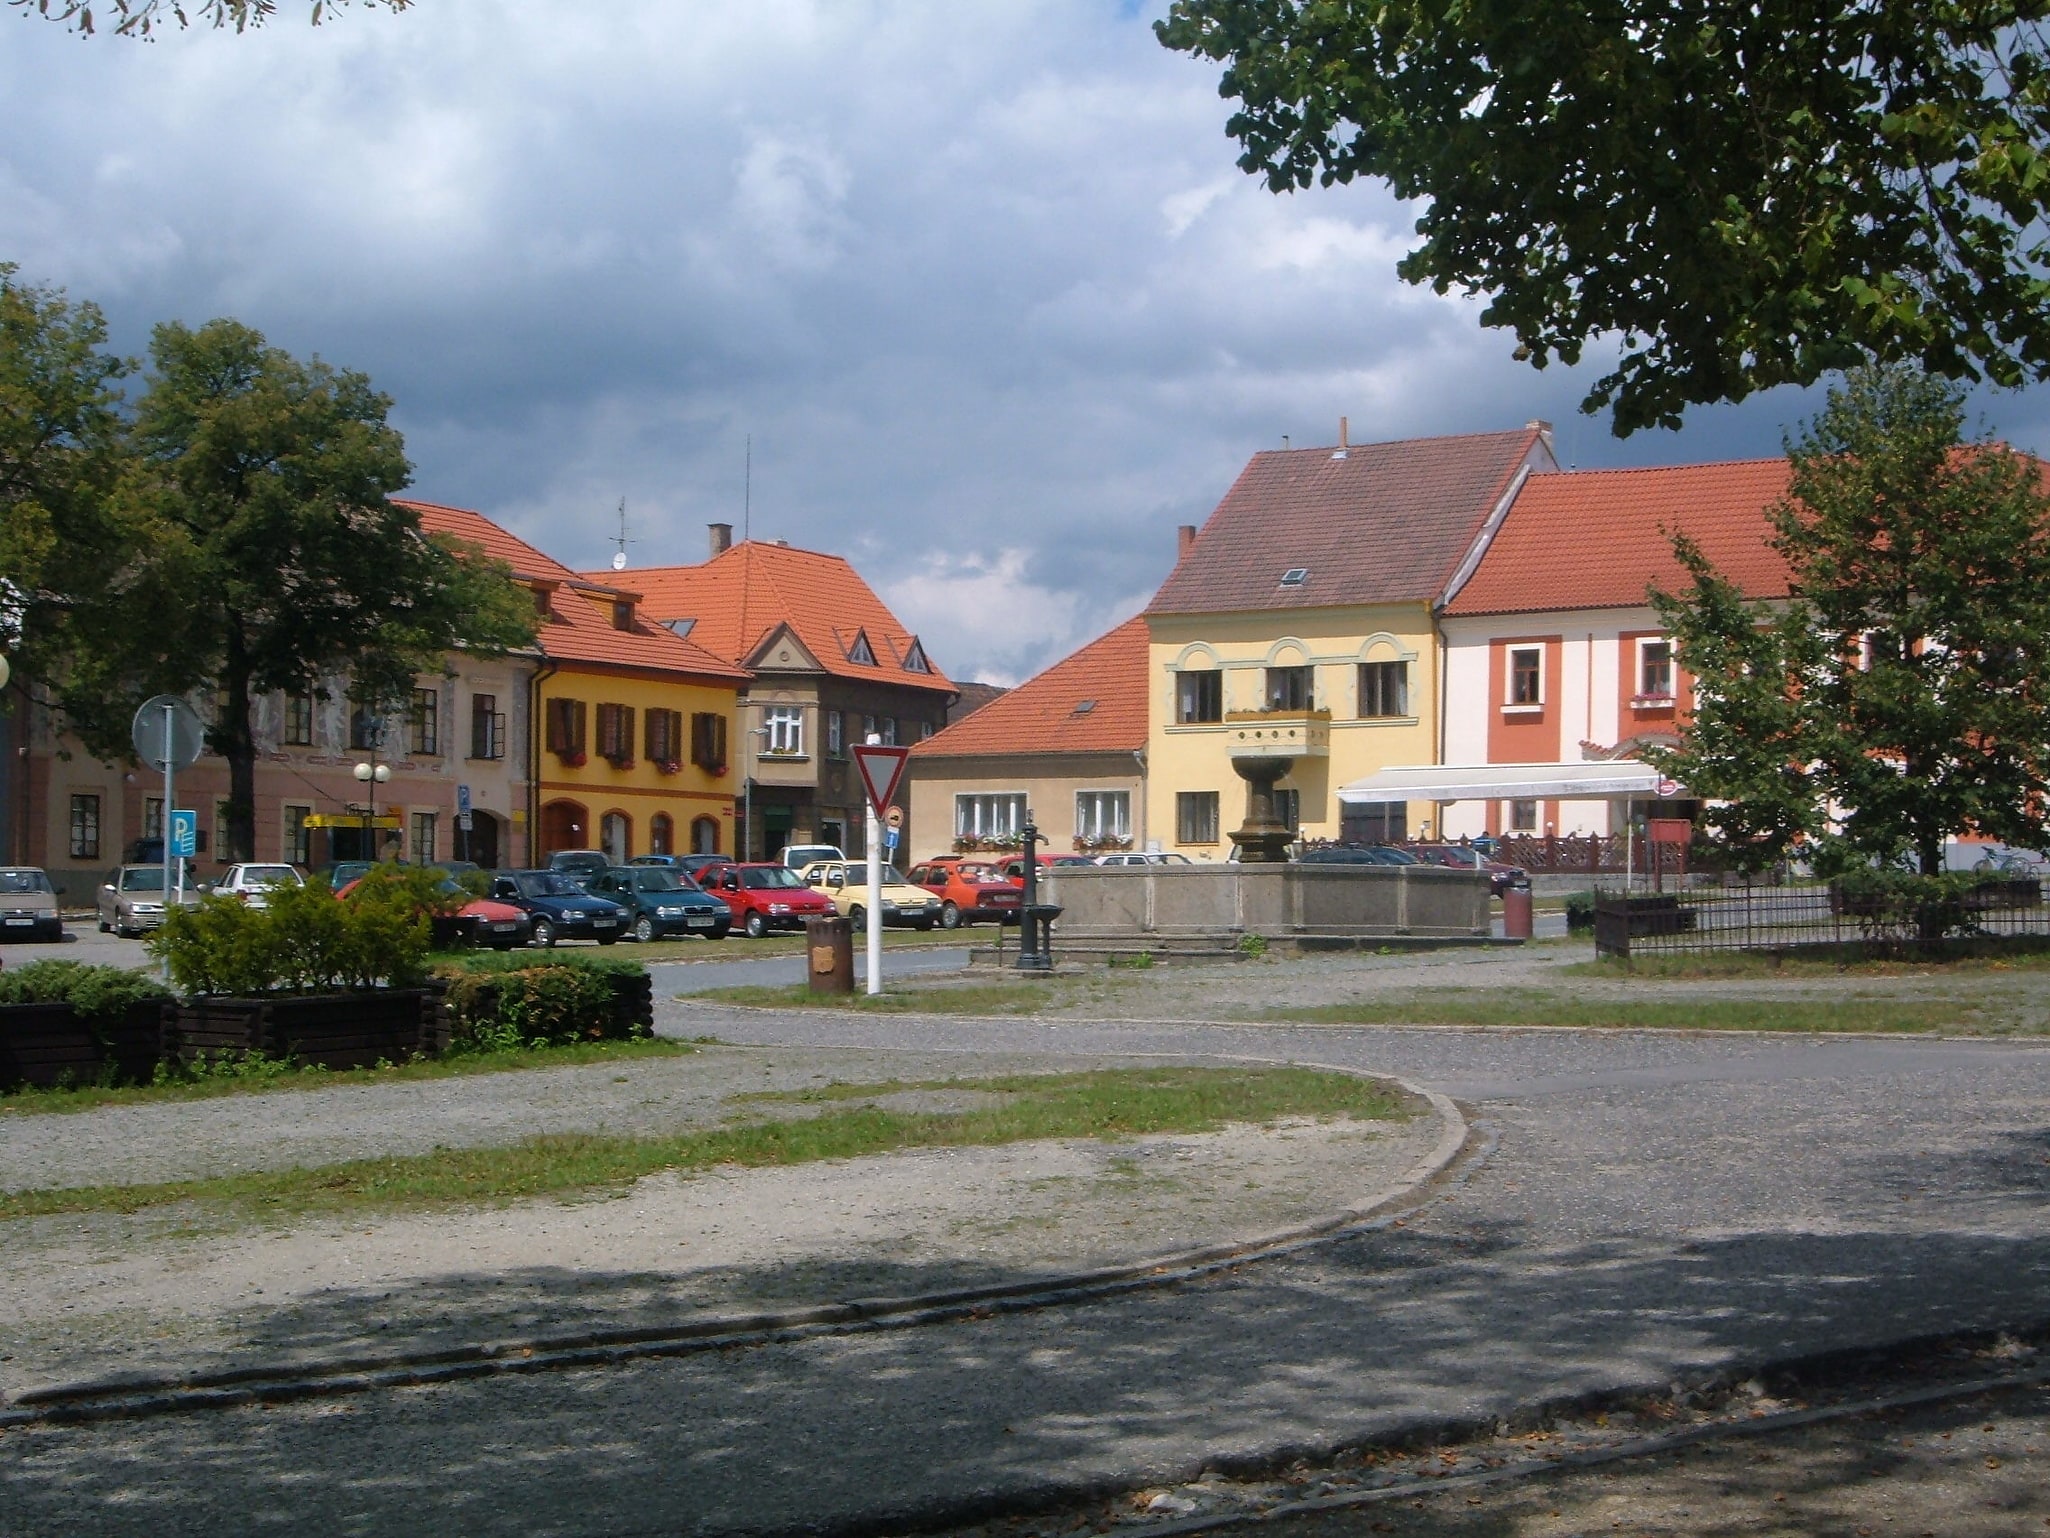 Bechyně, Czechy